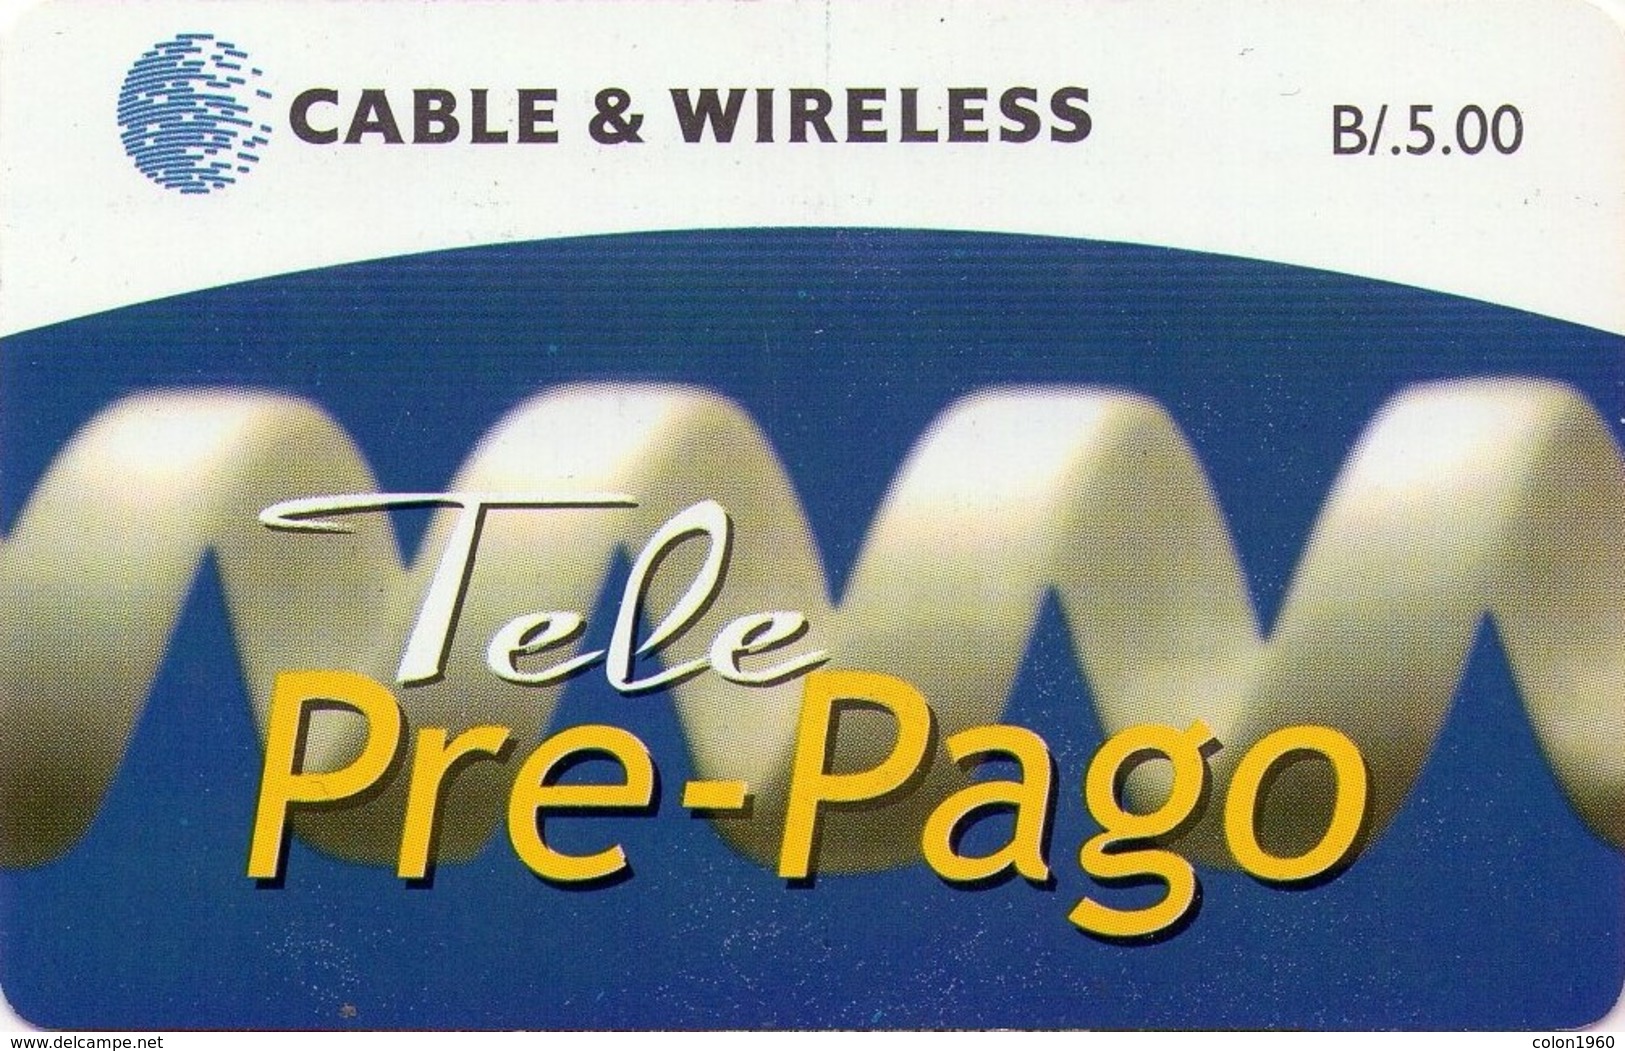 PANAMA. PAN-C&W-133. TELE PRE-PAGO. B/5.00. 06-2011. (005) - Panamá